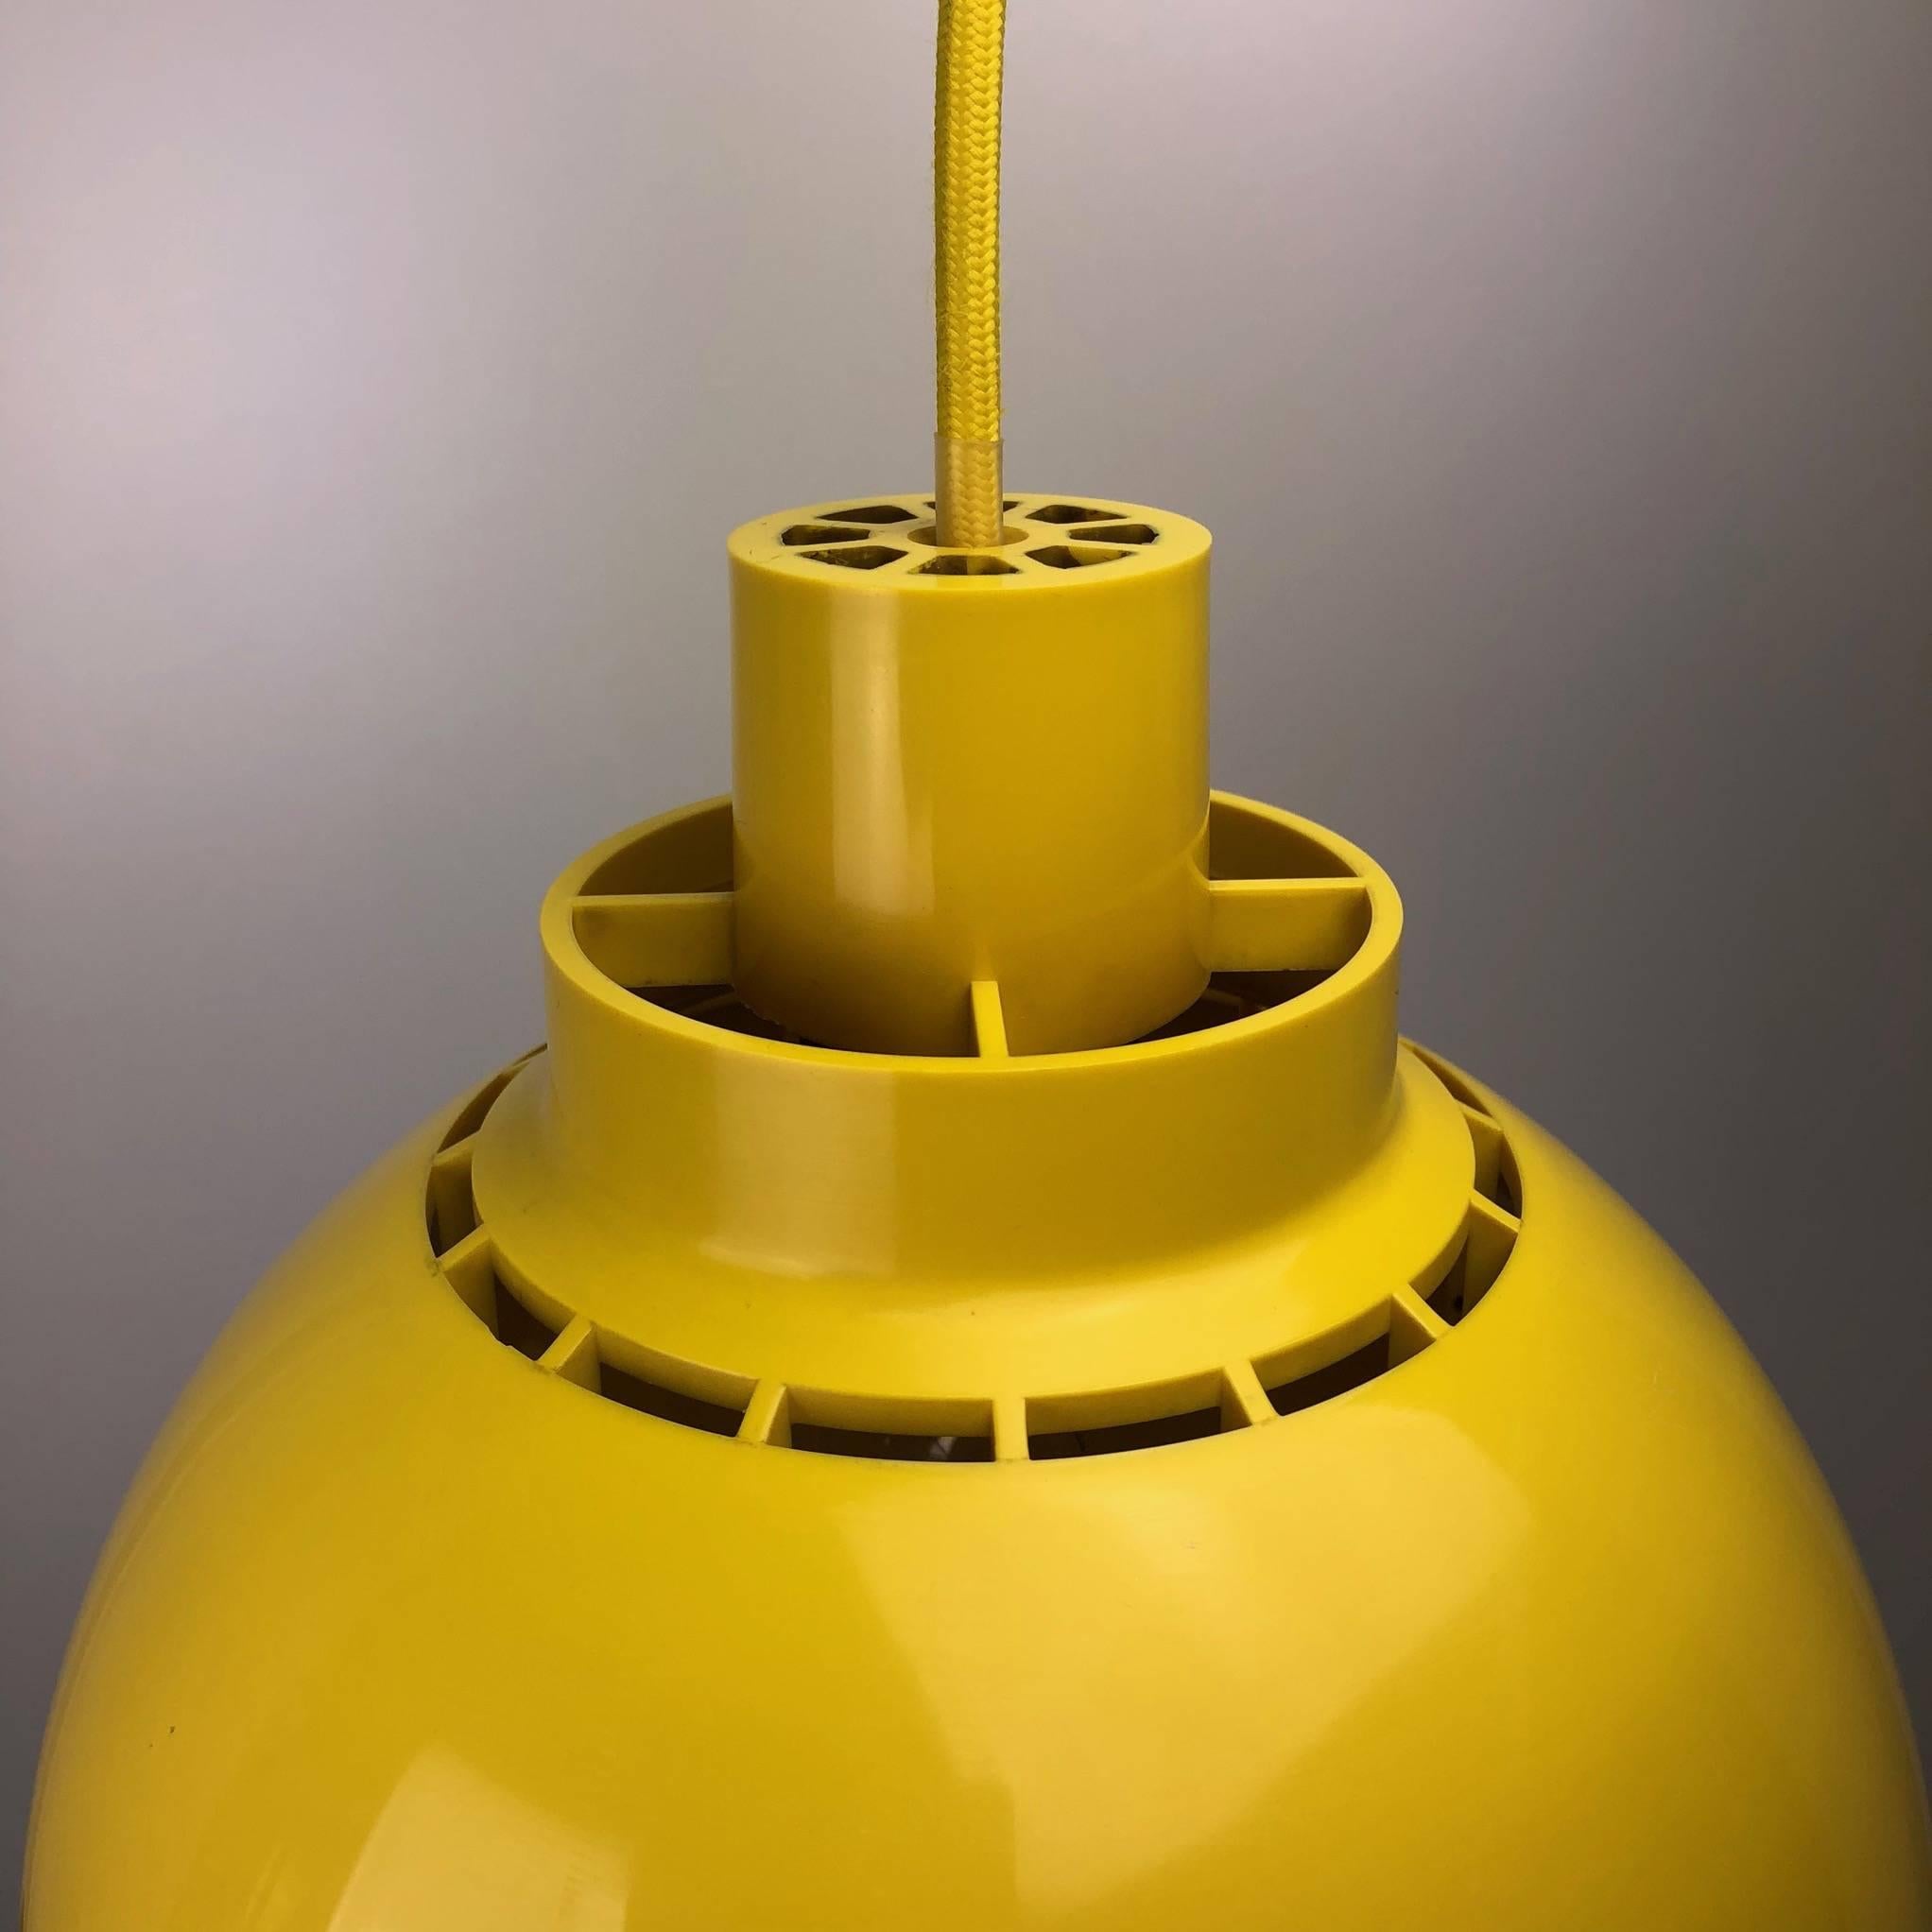 Sven Middelboe has designed this beautiful and unique lamp, 